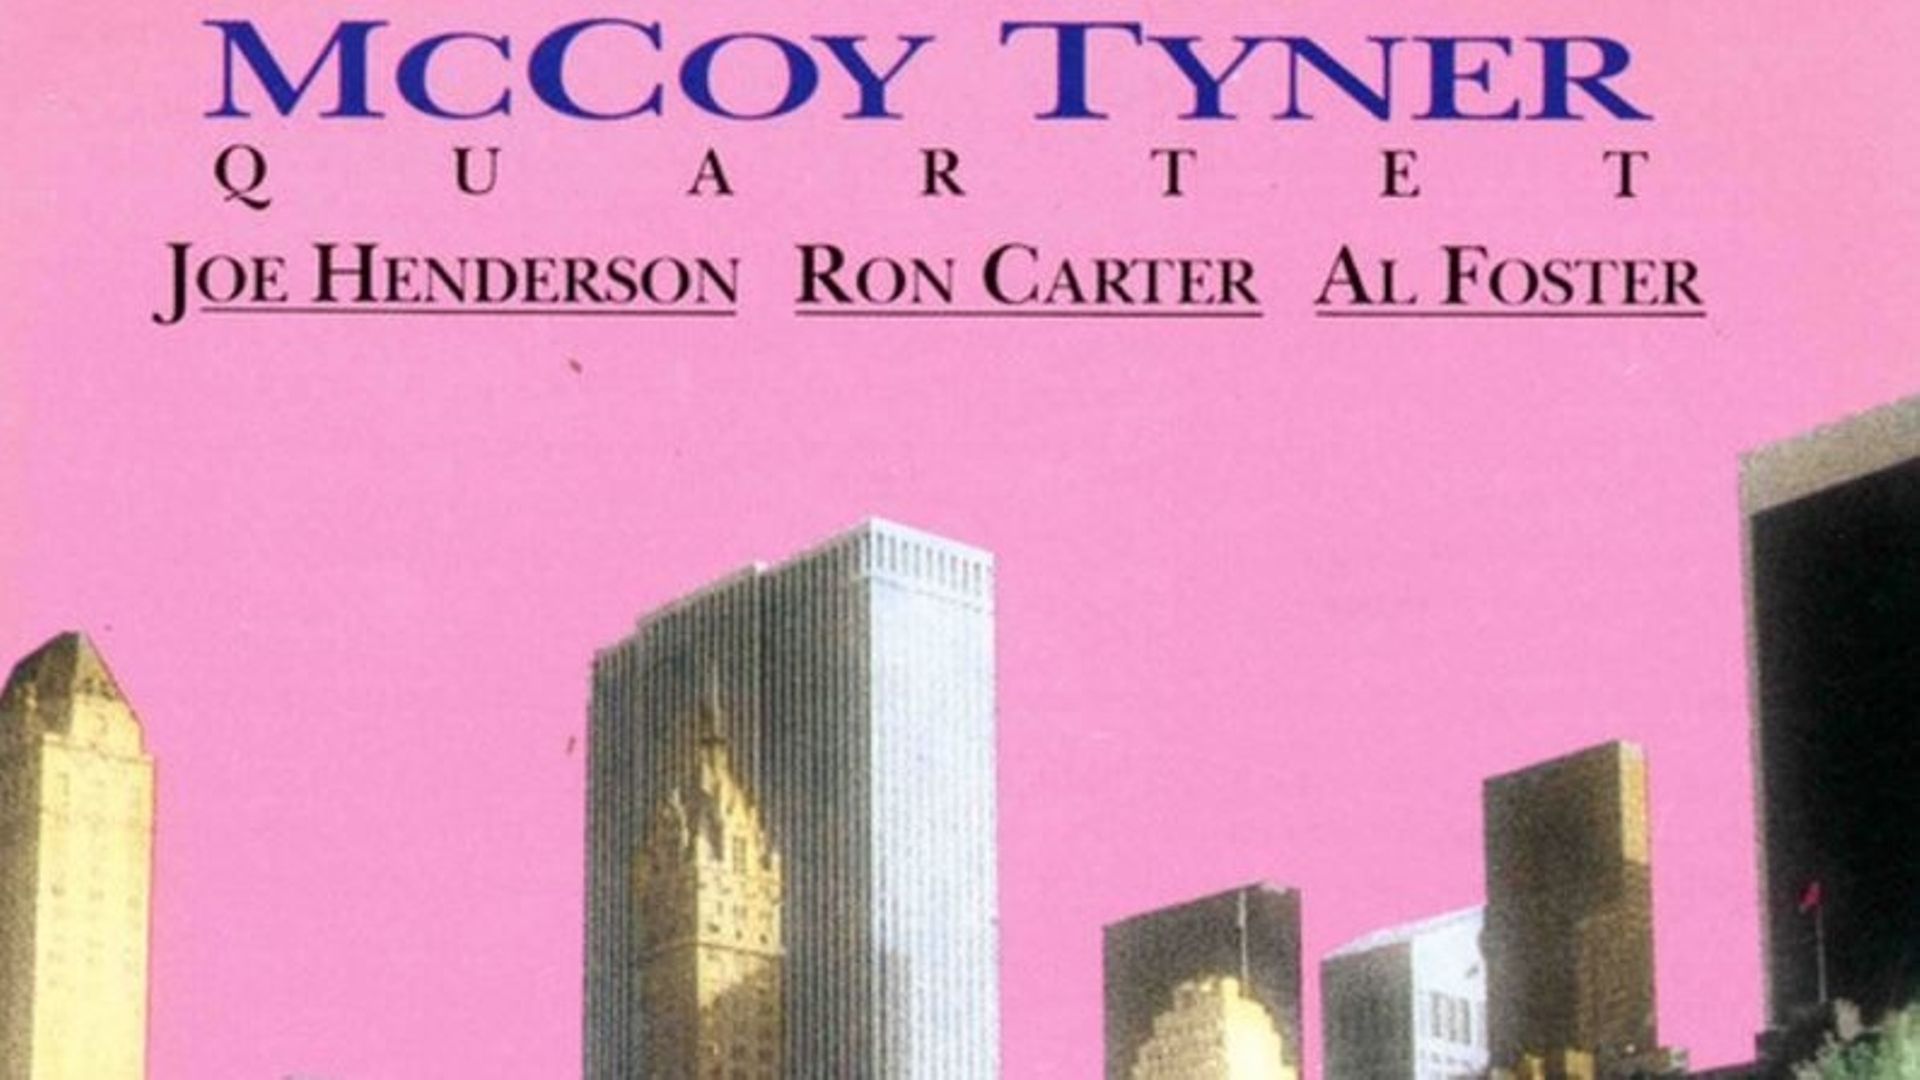 Il y a 30 ans s'enregistrait l’album "New York Reunion" de McCoy Tyner